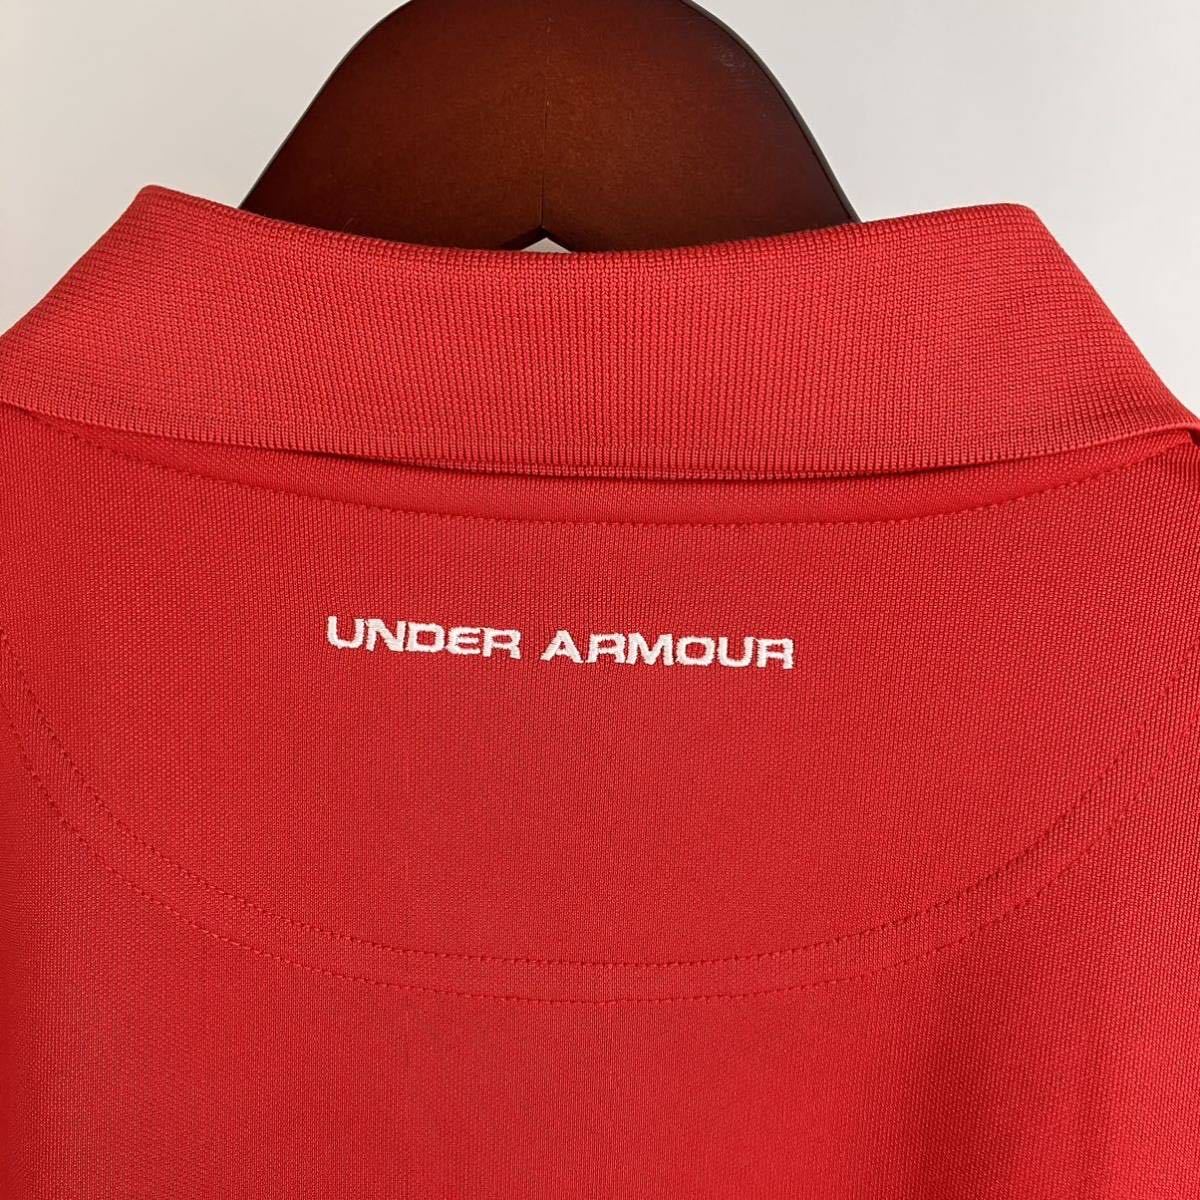 UNDER ARMOUR アンダーアーマー 半袖 ポロシャツ メンズ M 赤 レッド カジュアル スポーツ トレーニング ゴルフ golf シンプル ロゴ 刺繍